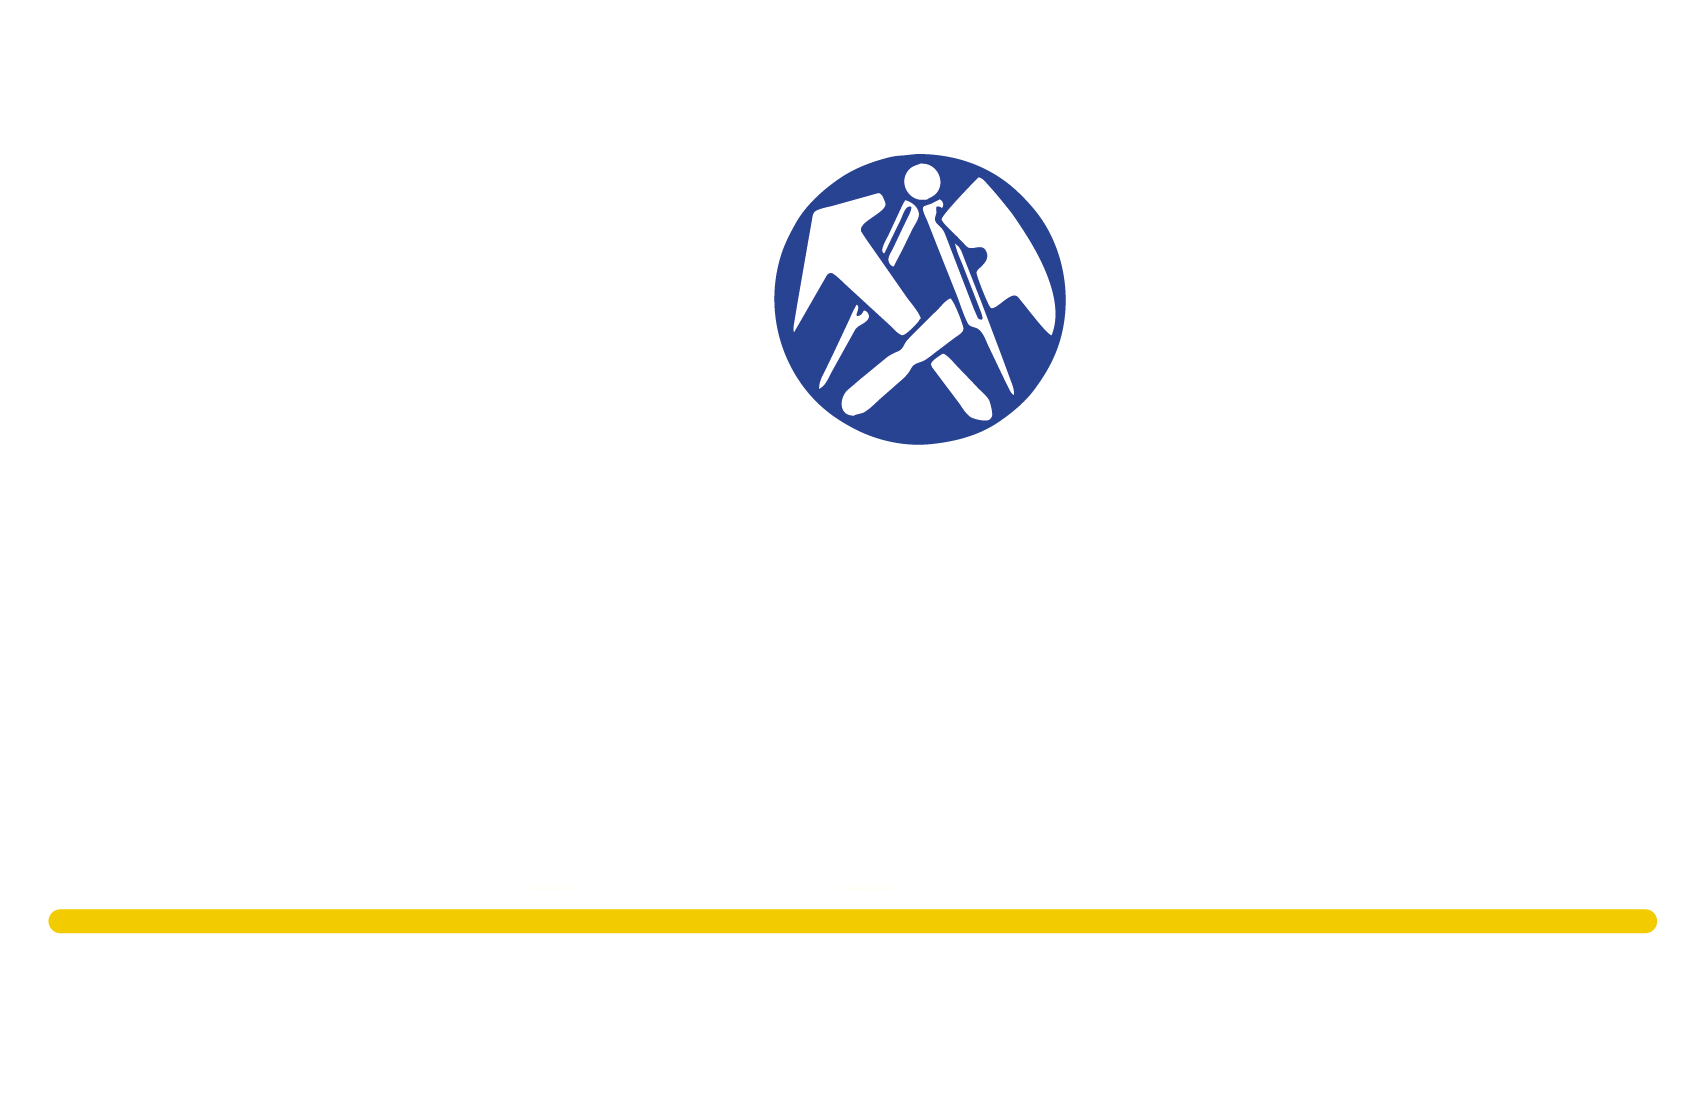 Eduard Koch Bedachungen